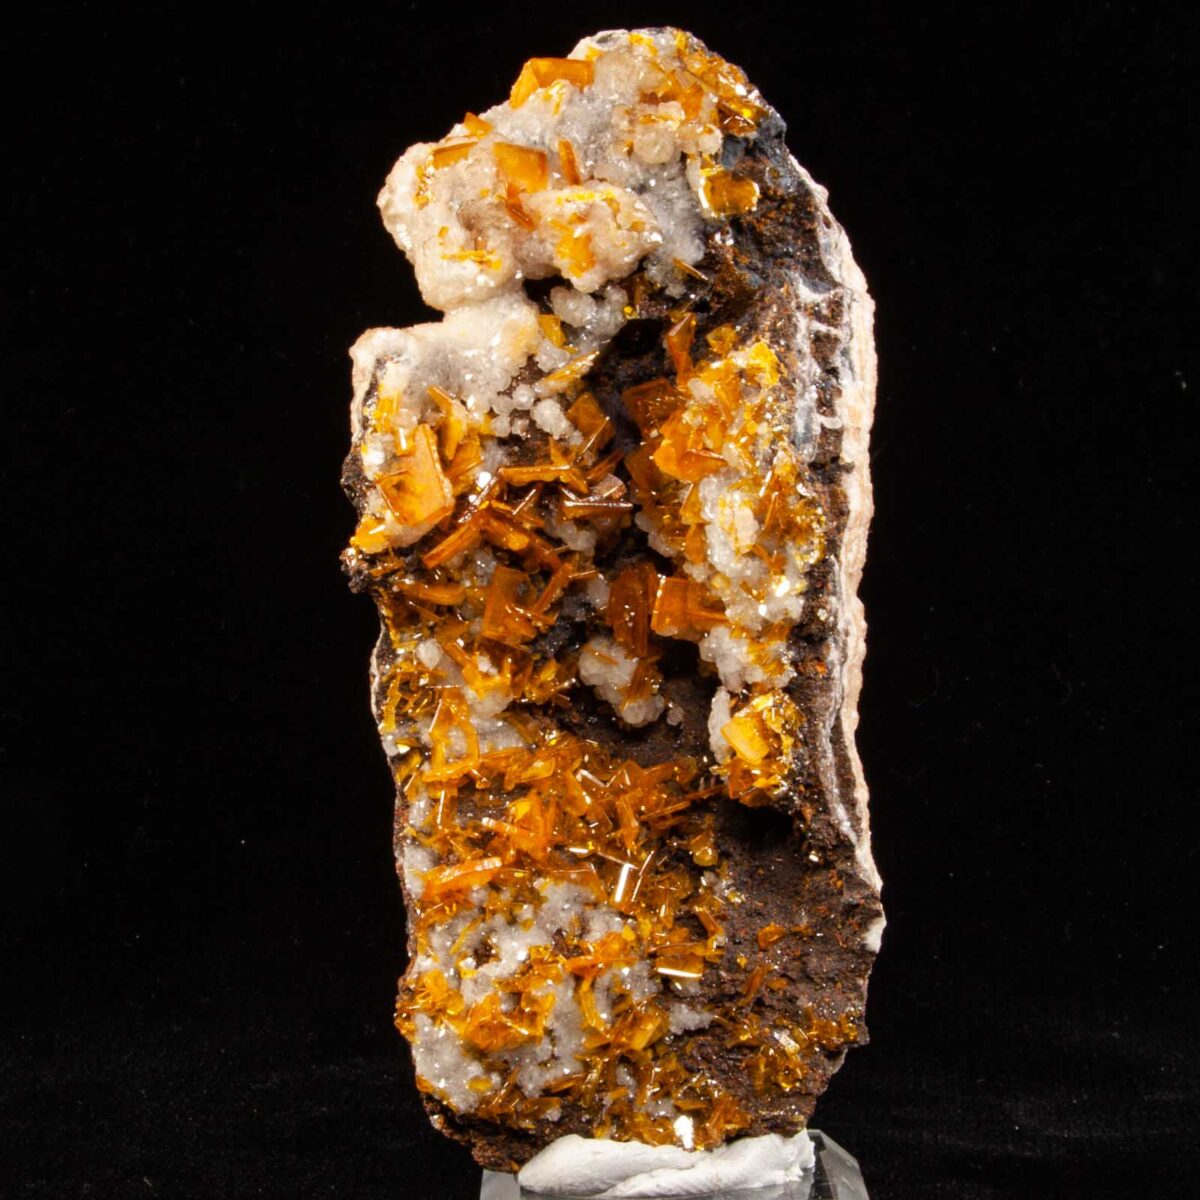 Wulfenite with Calcite